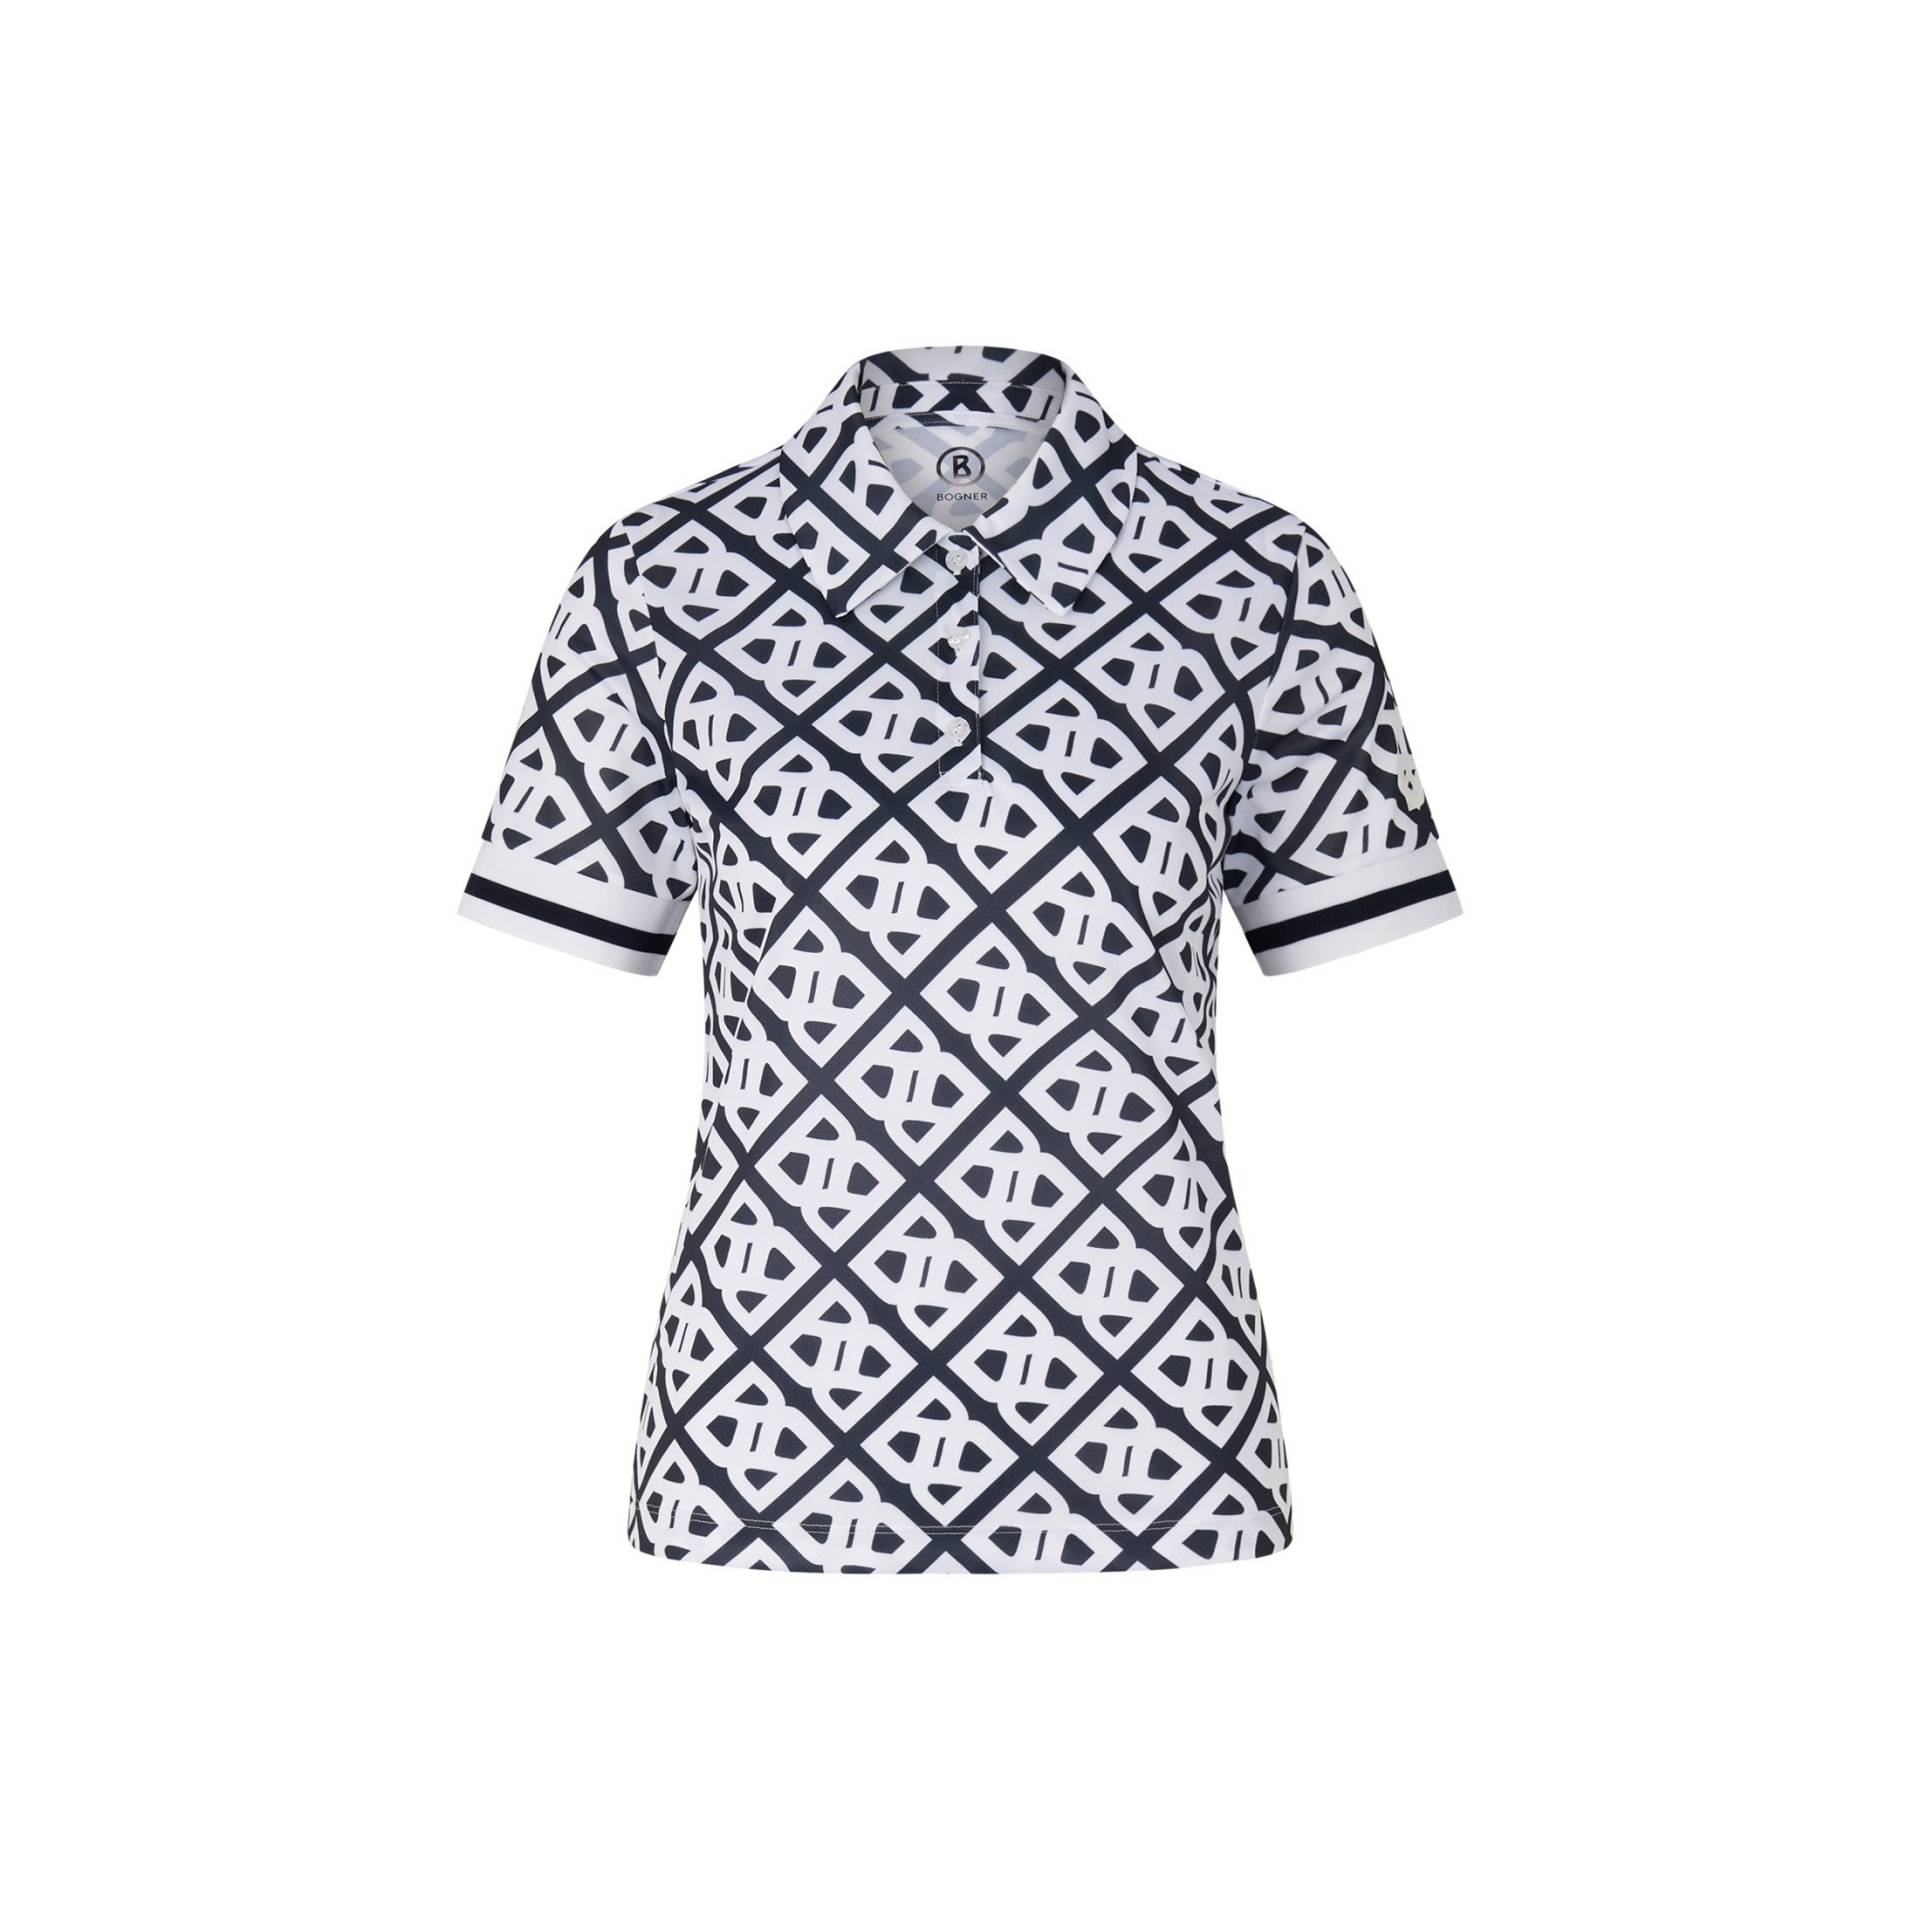 BOGNER SPORT Funktions-Polo-Shirt Calysa für Damen - Navy-Blau/Weiß - 44 von BOGNER Sport